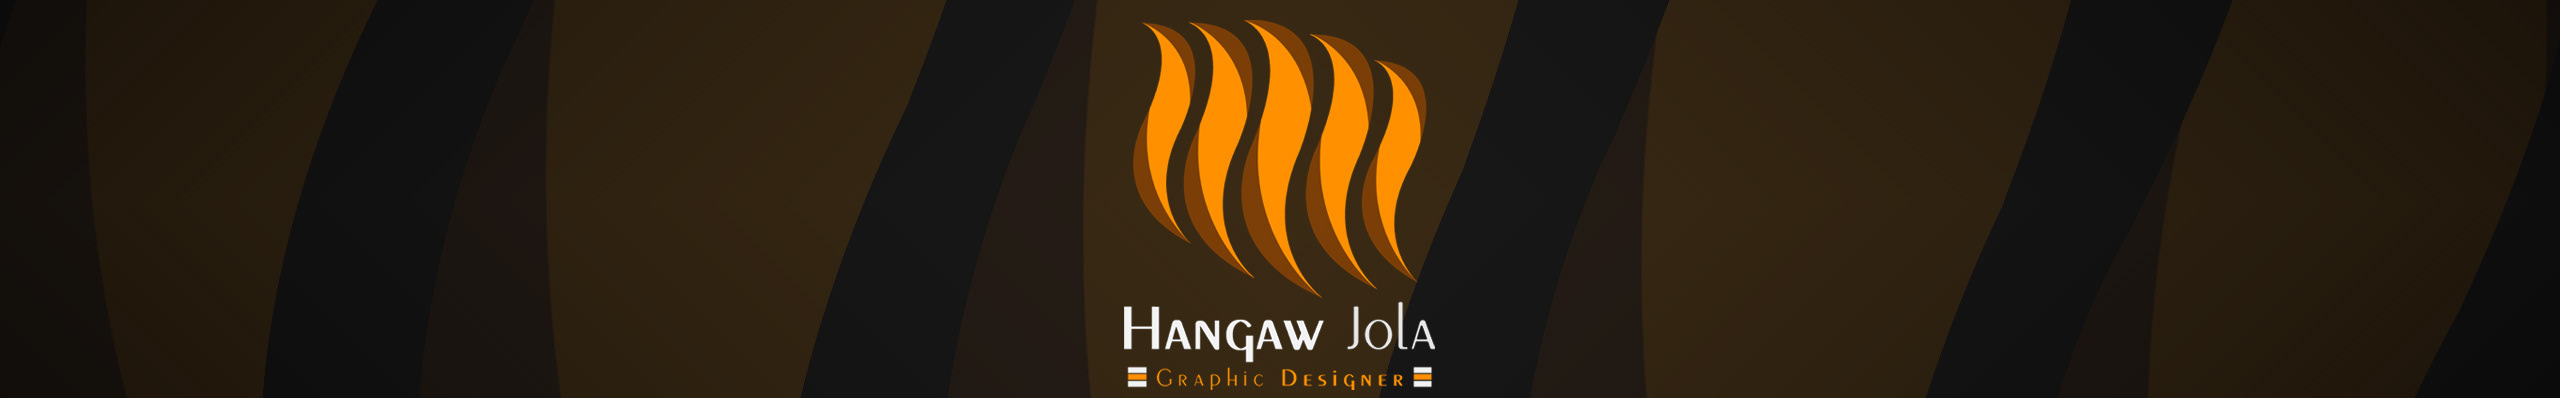 Hangaw Jola profil başlığı